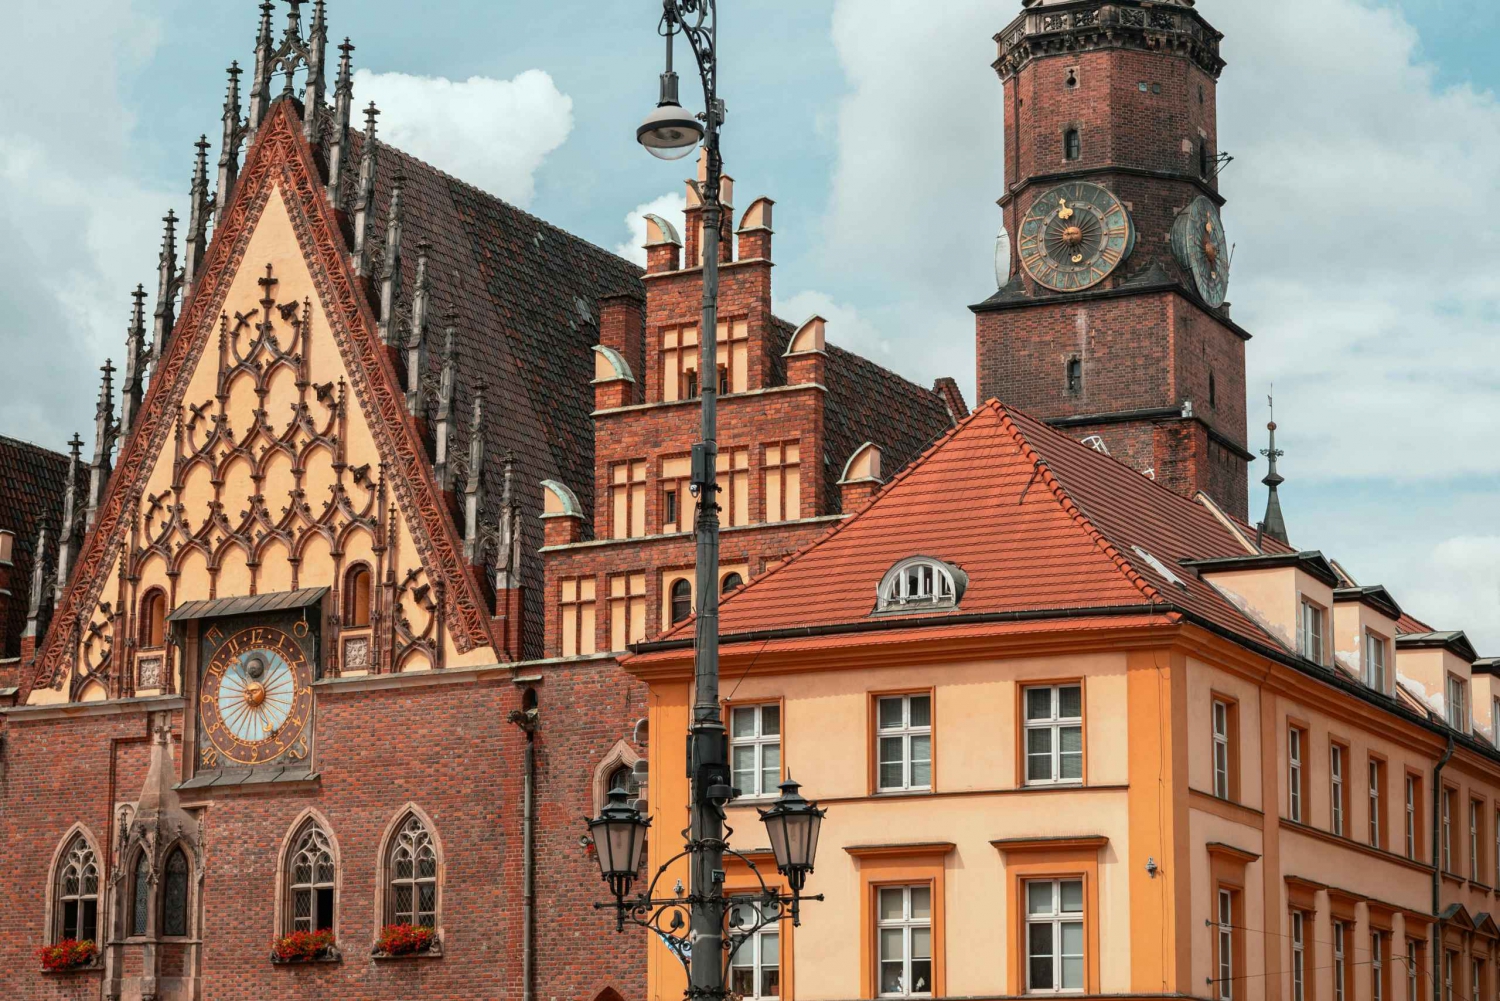 Vanuit Warschau en Lodz: Een dagtocht naar Wrocław